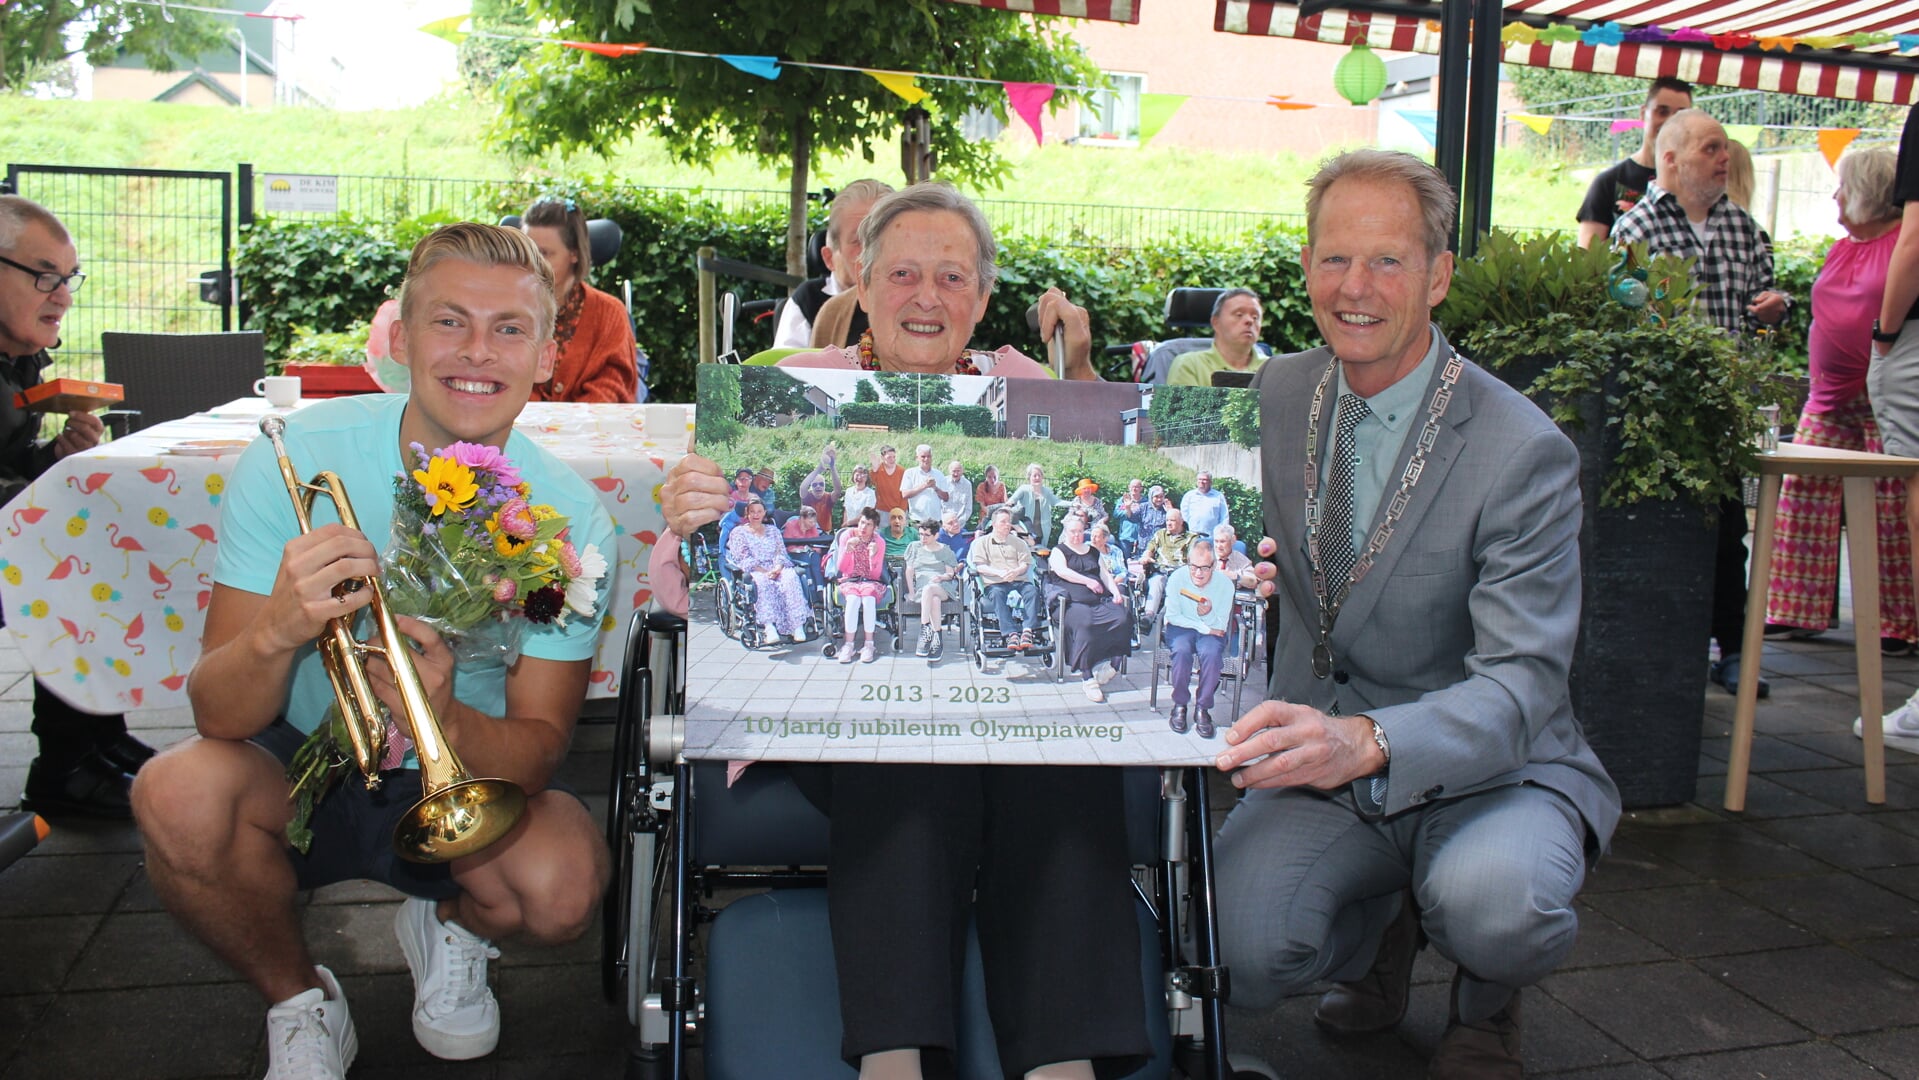 Burgemeester Arie van Erk samen met de oudste bewoonster, de 89-jarige Wil, onthulde een groepsfoto. Links Jeffrey Parmentier. | Foto en tekst: AC